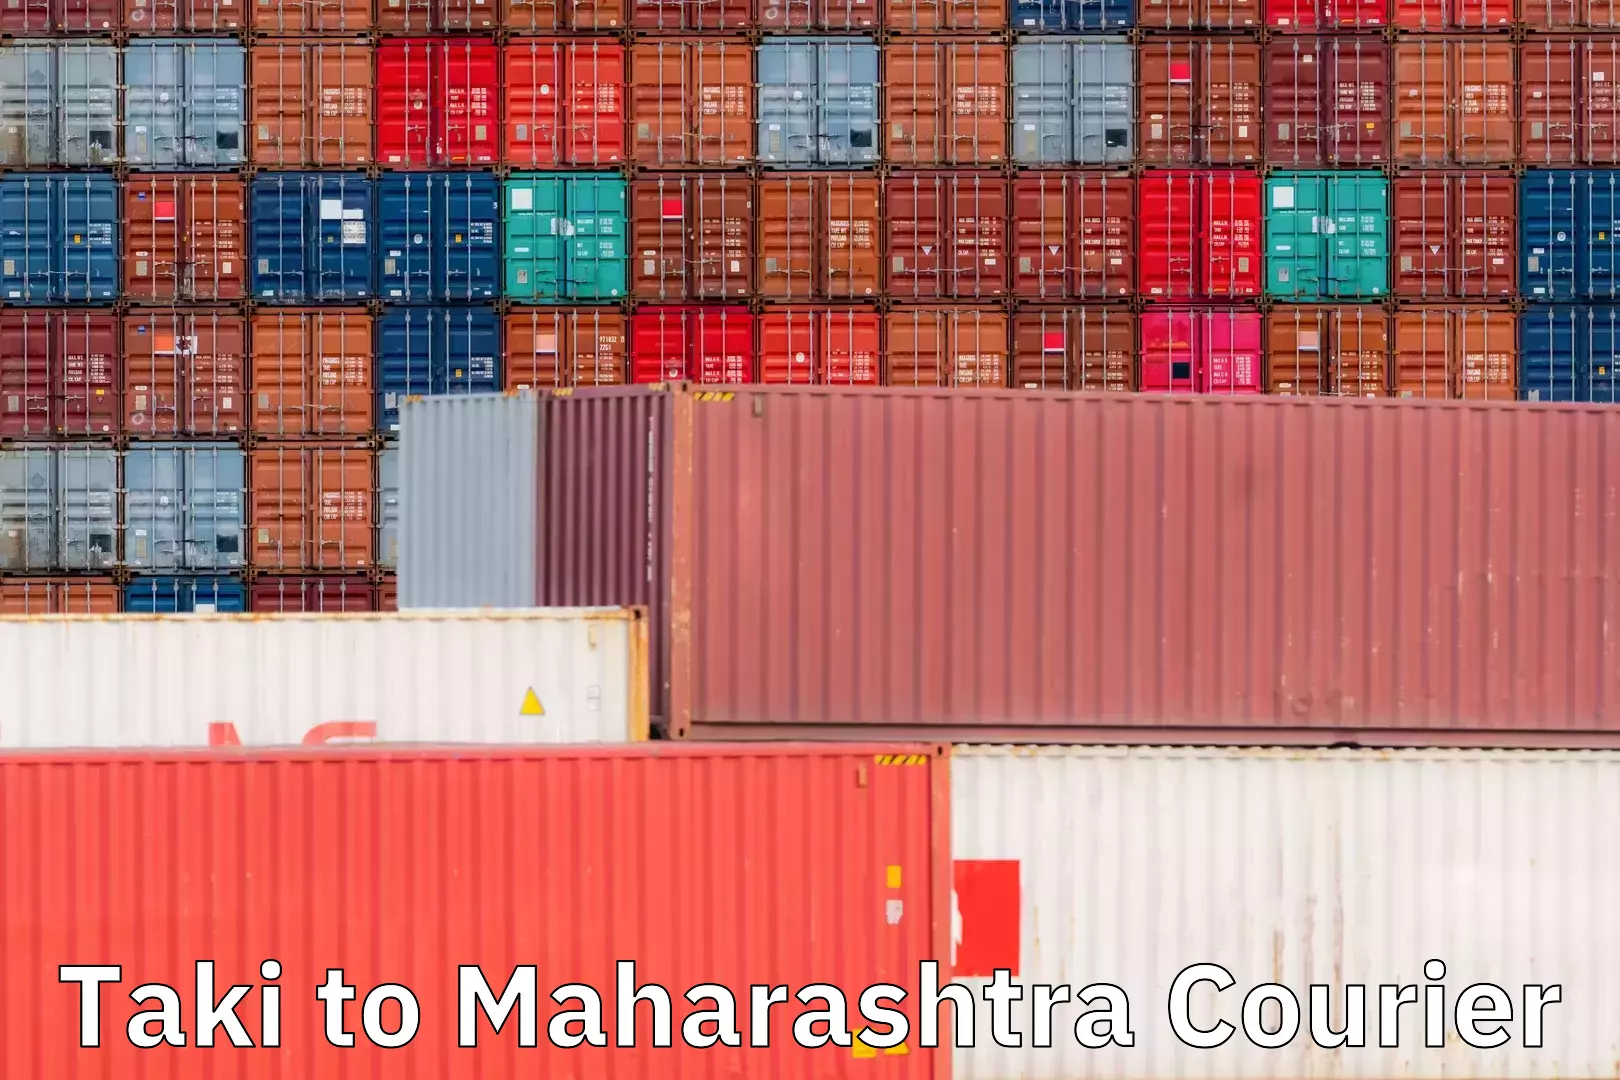 Cargo delivery service Taki to Maharashtra